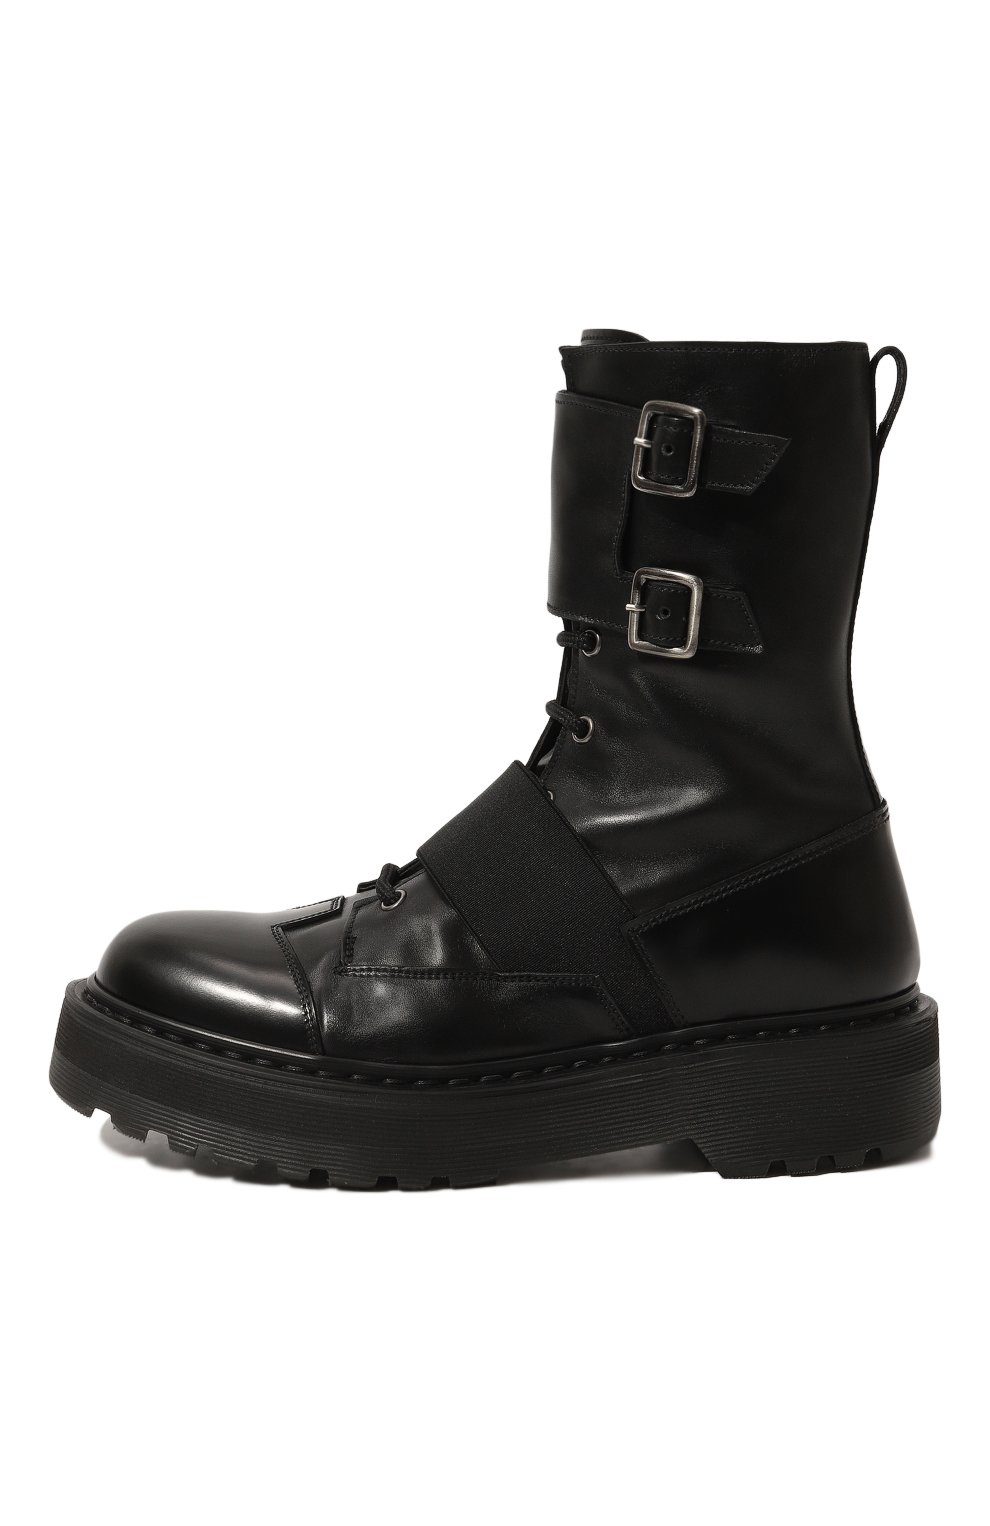 Кожаные ботинки Premiata M4970C/VARIANTE 3, цвет чёрный, размер 37 M4970C/VARIANTE 3 - фото 4